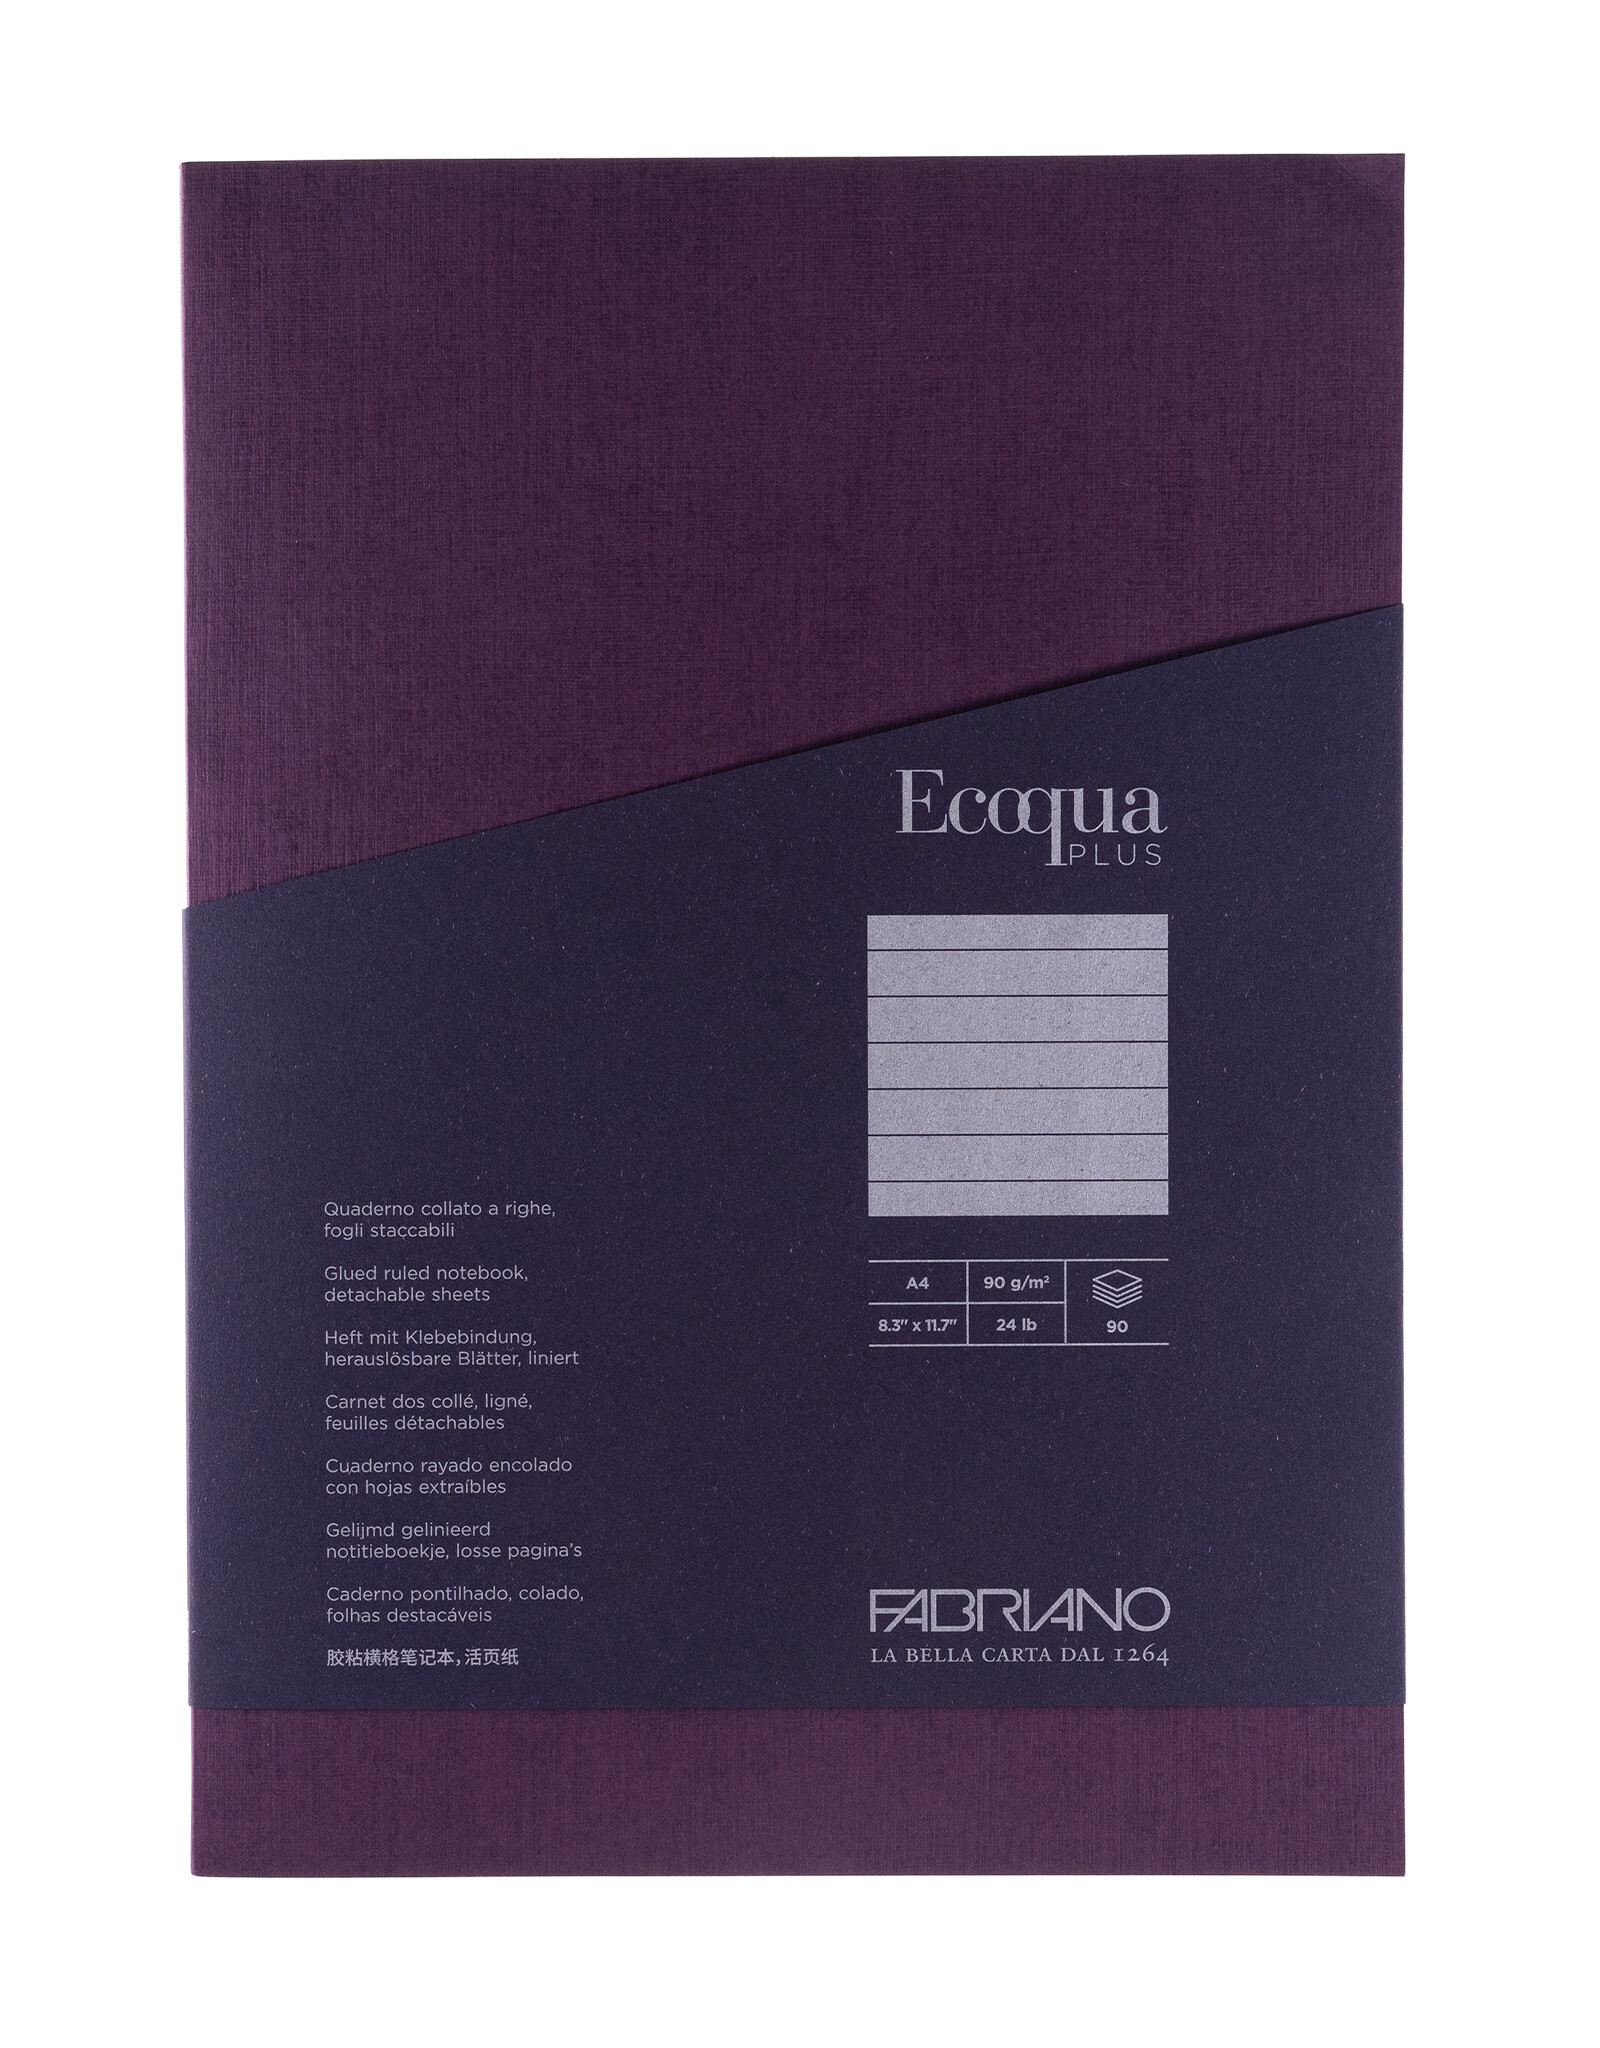 Ecoqua Plus Glue Bound Notebook, Wine, A4, Ruled